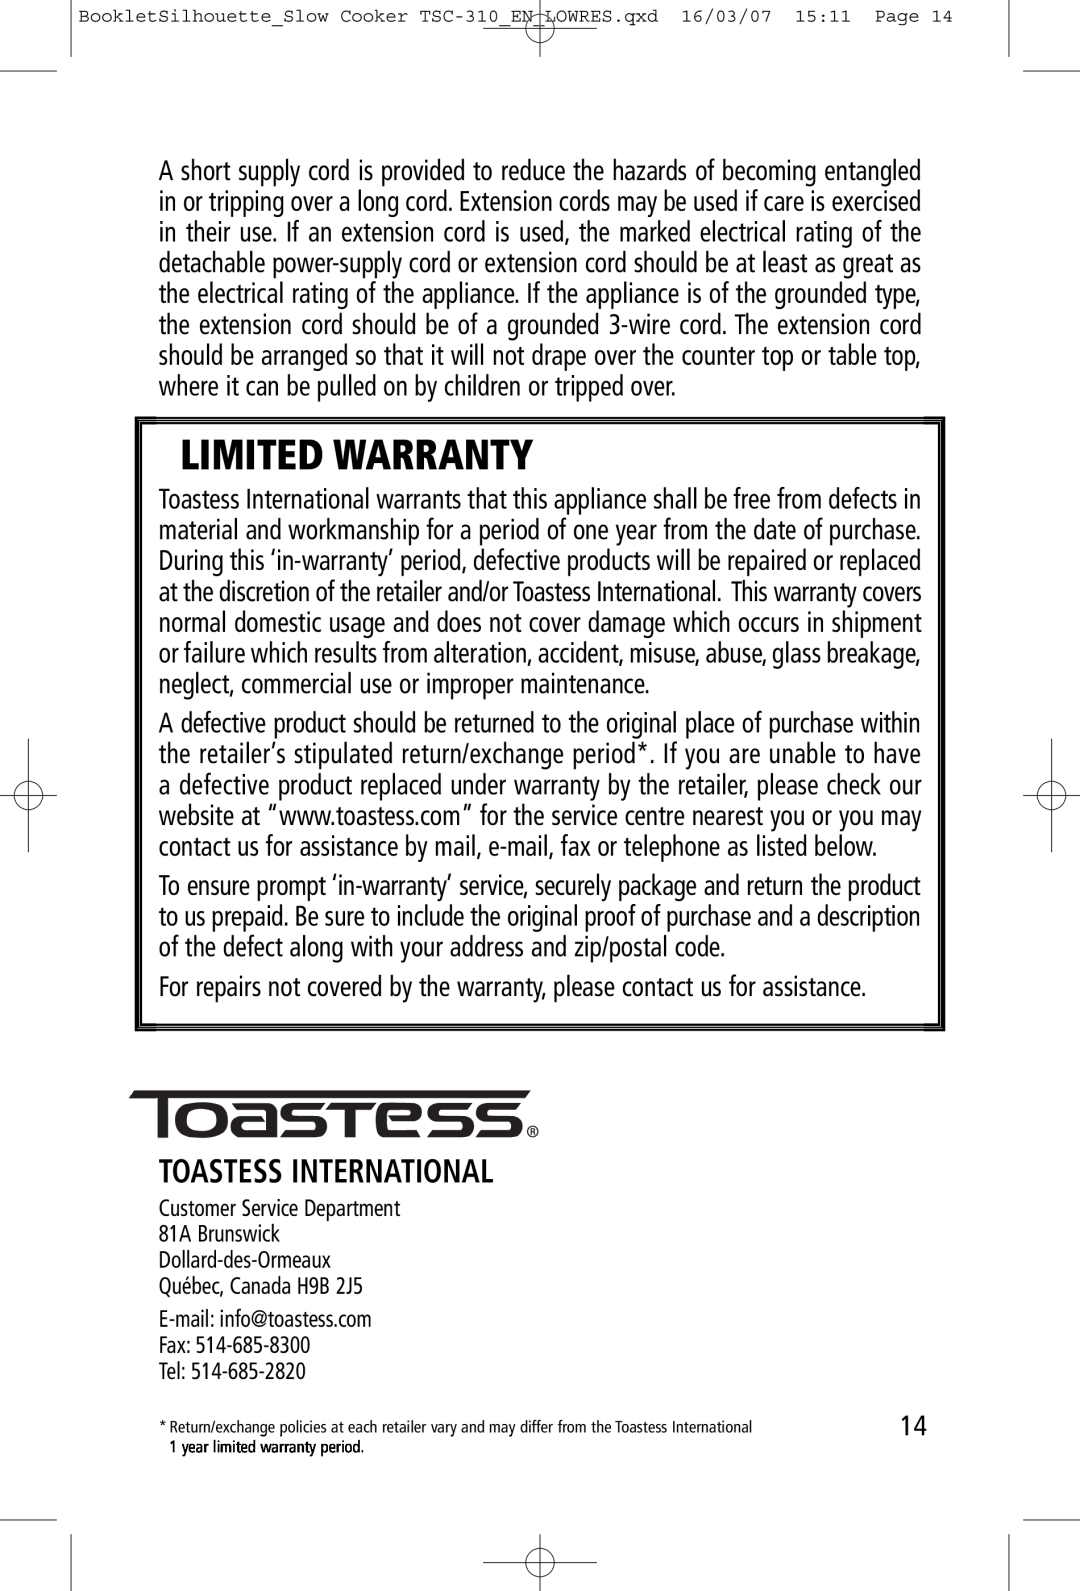 Toastess TSC-310 manual Toastess International, Limited Warranty 